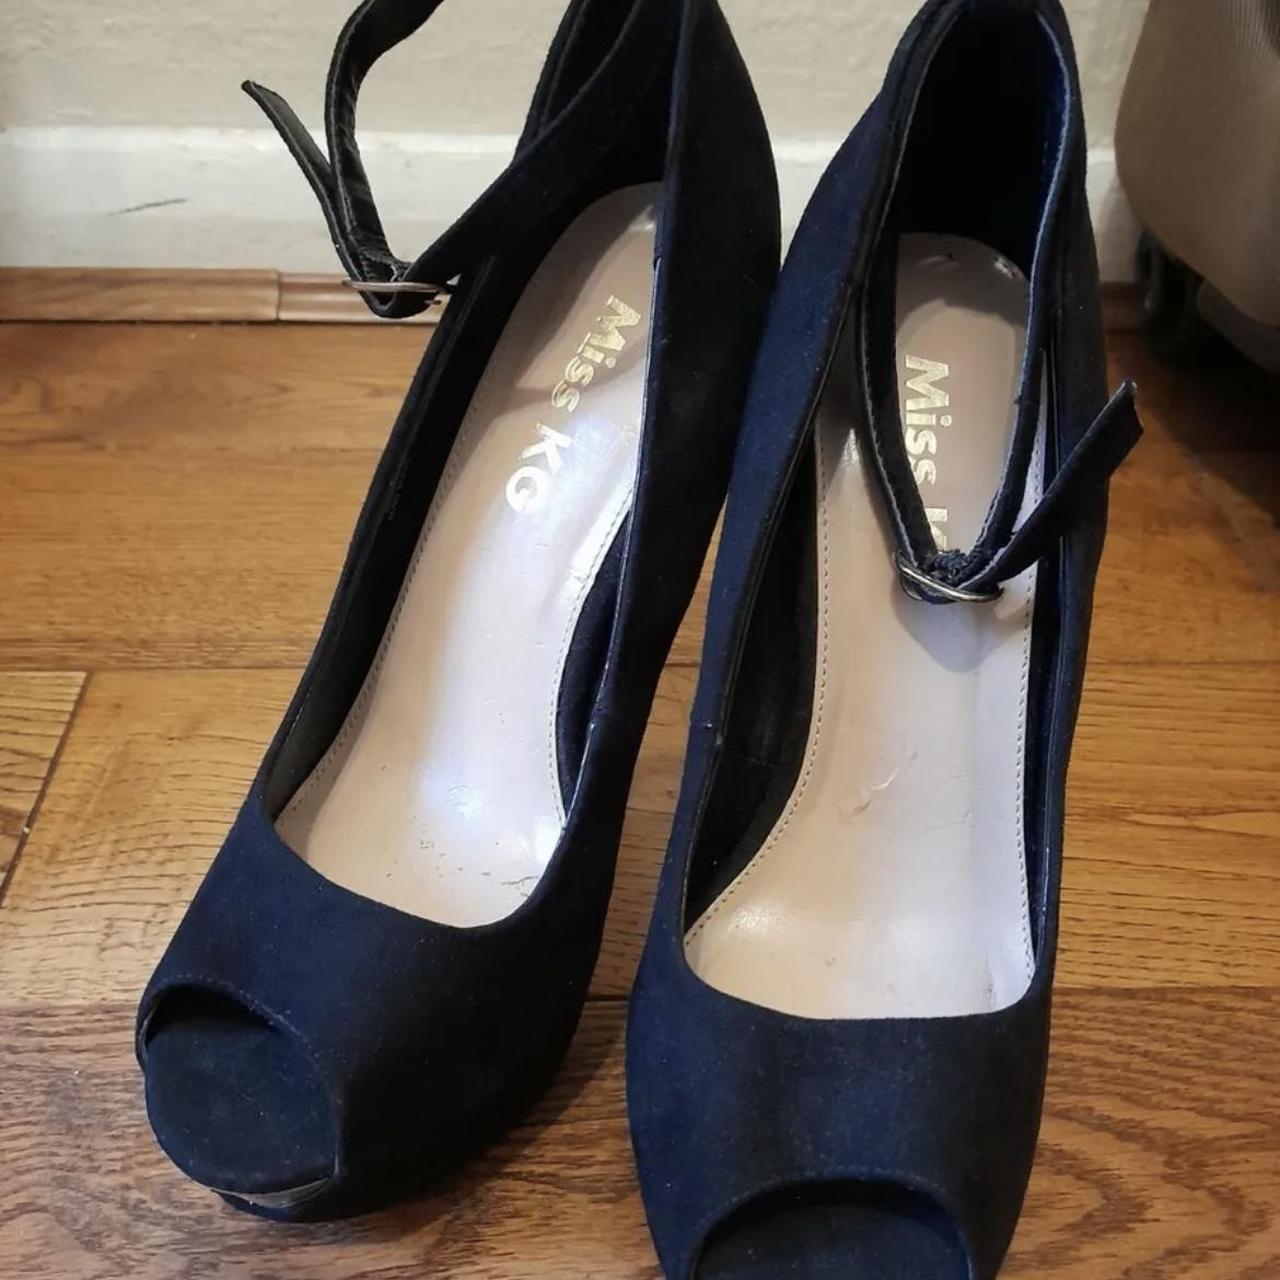 Black Velvet Kurt Geiger High Heels Shoes Size 39 Or... - Depop